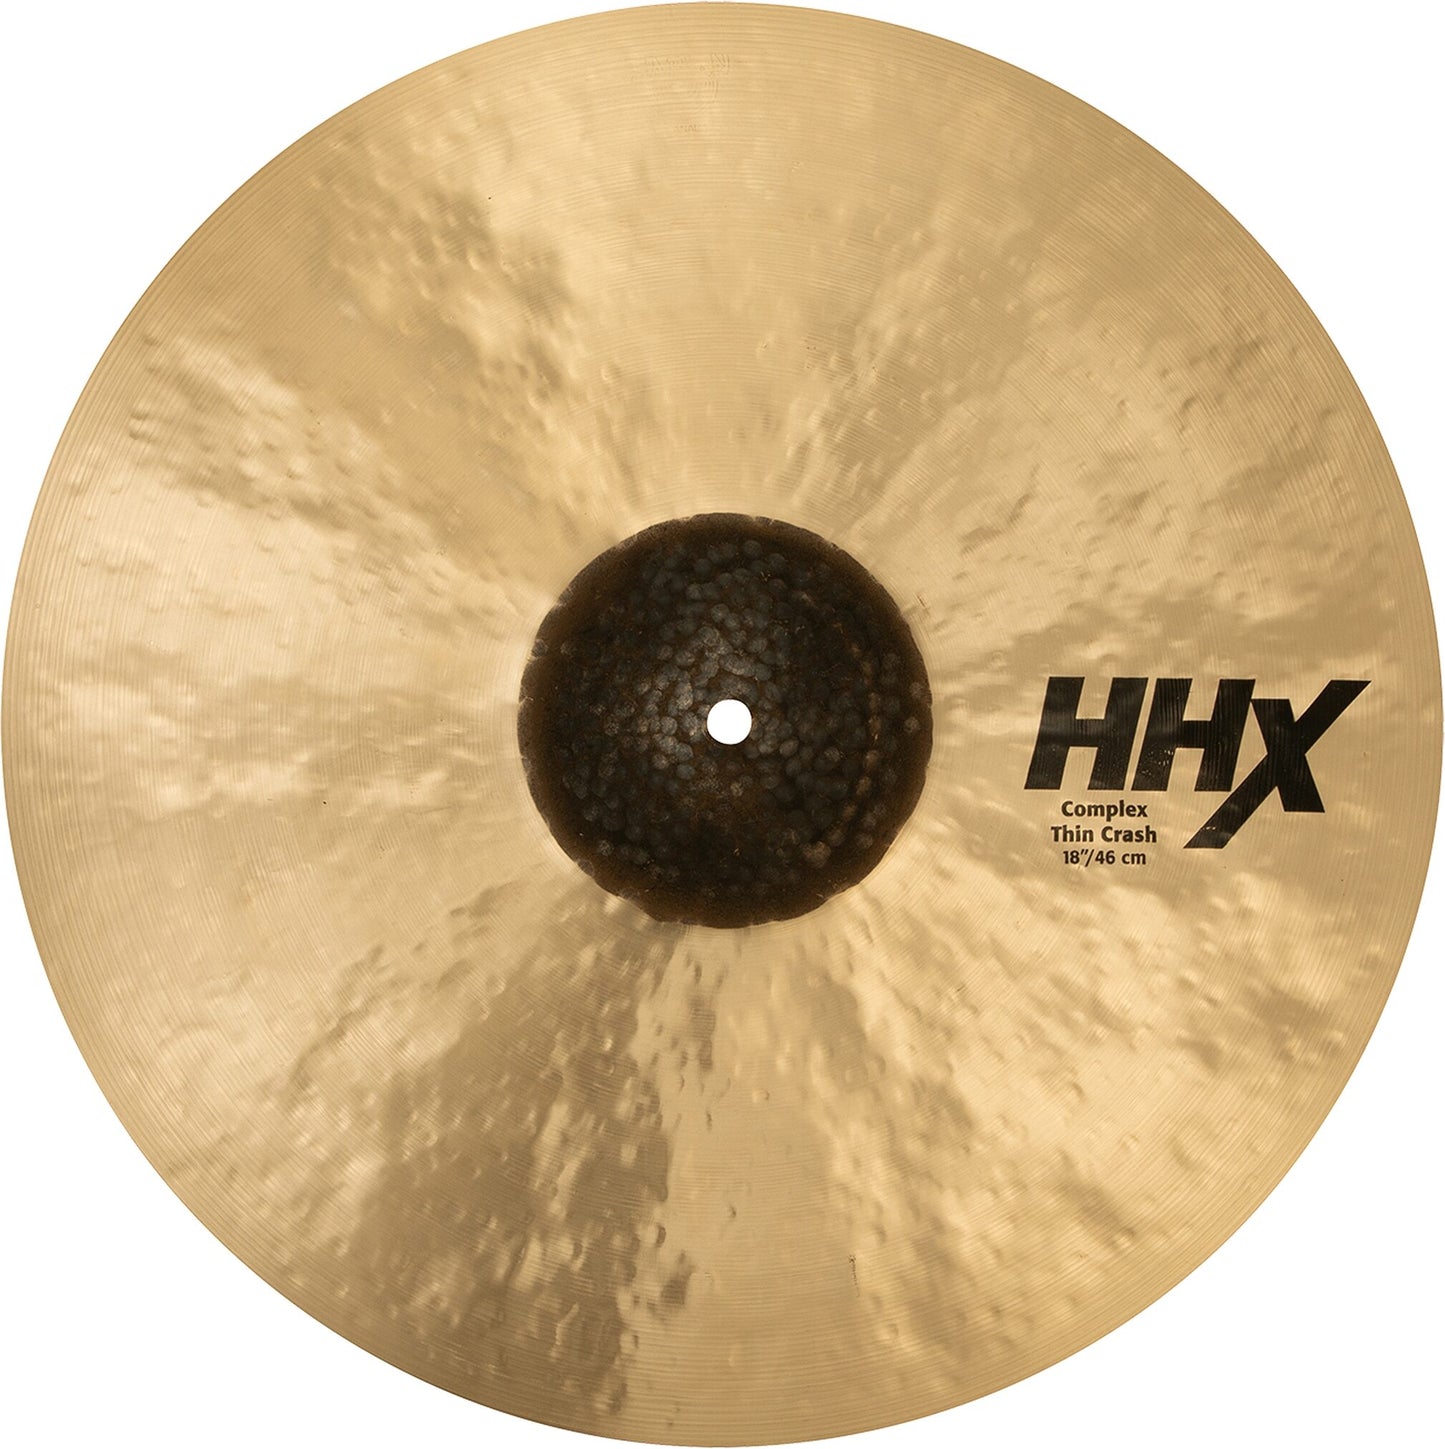 Sabian HHX Thin Crash Cymbal, 18 Inch